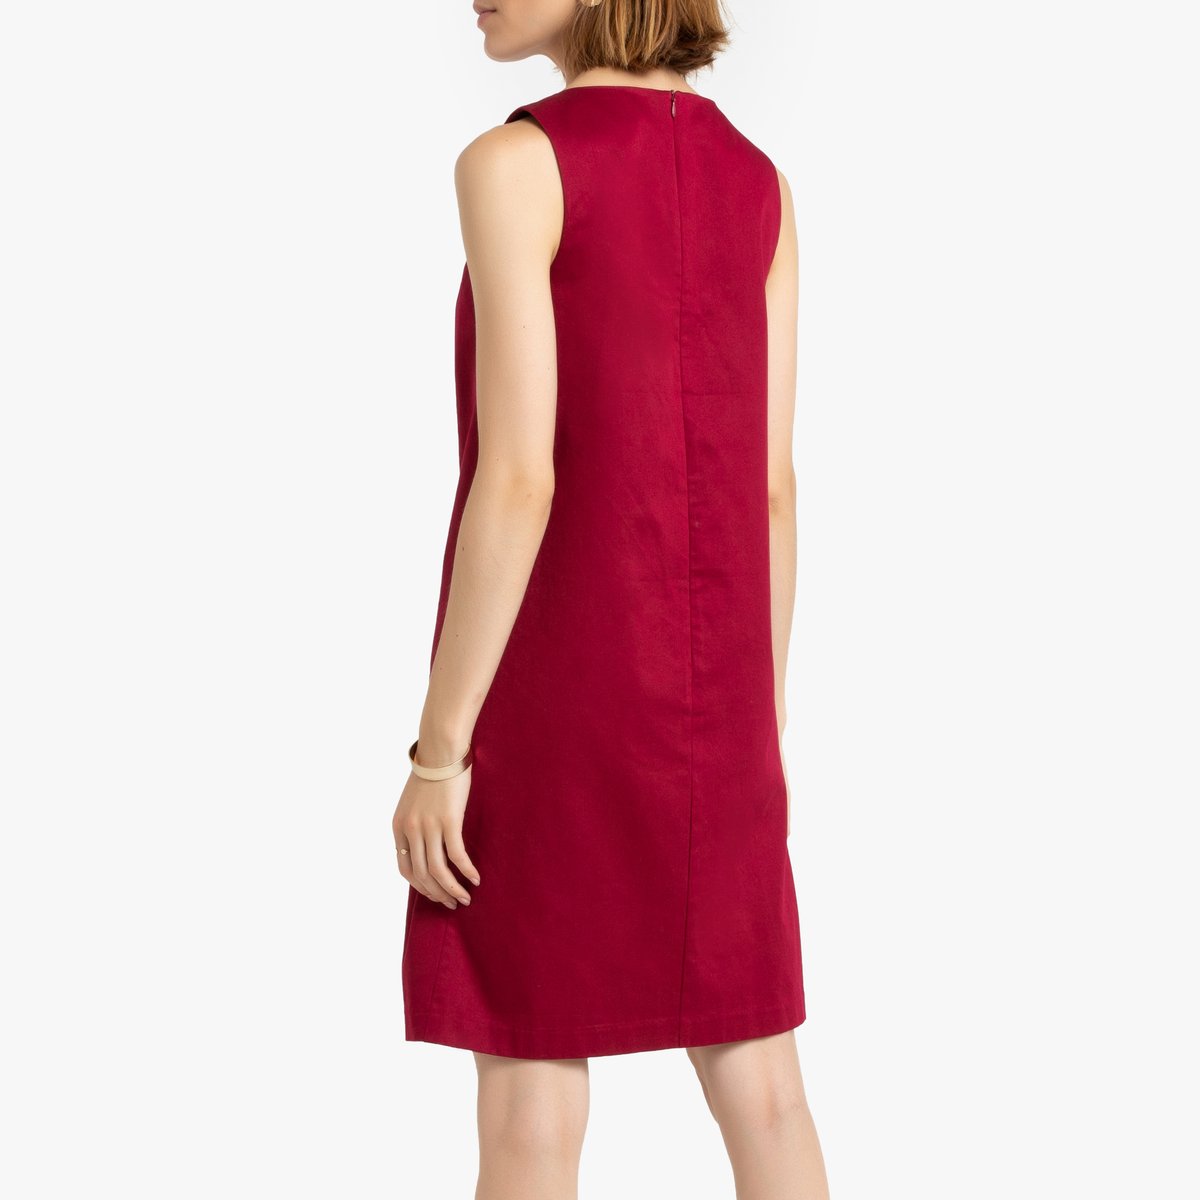 Платье La Redoute Короткое прямое без рукавов 36 (FR) - 42 (RUS) красный, размер 36 (FR) - 42 (RUS) Короткое прямое без рукавов 36 (FR) - 42 (RUS) красный - фото 4